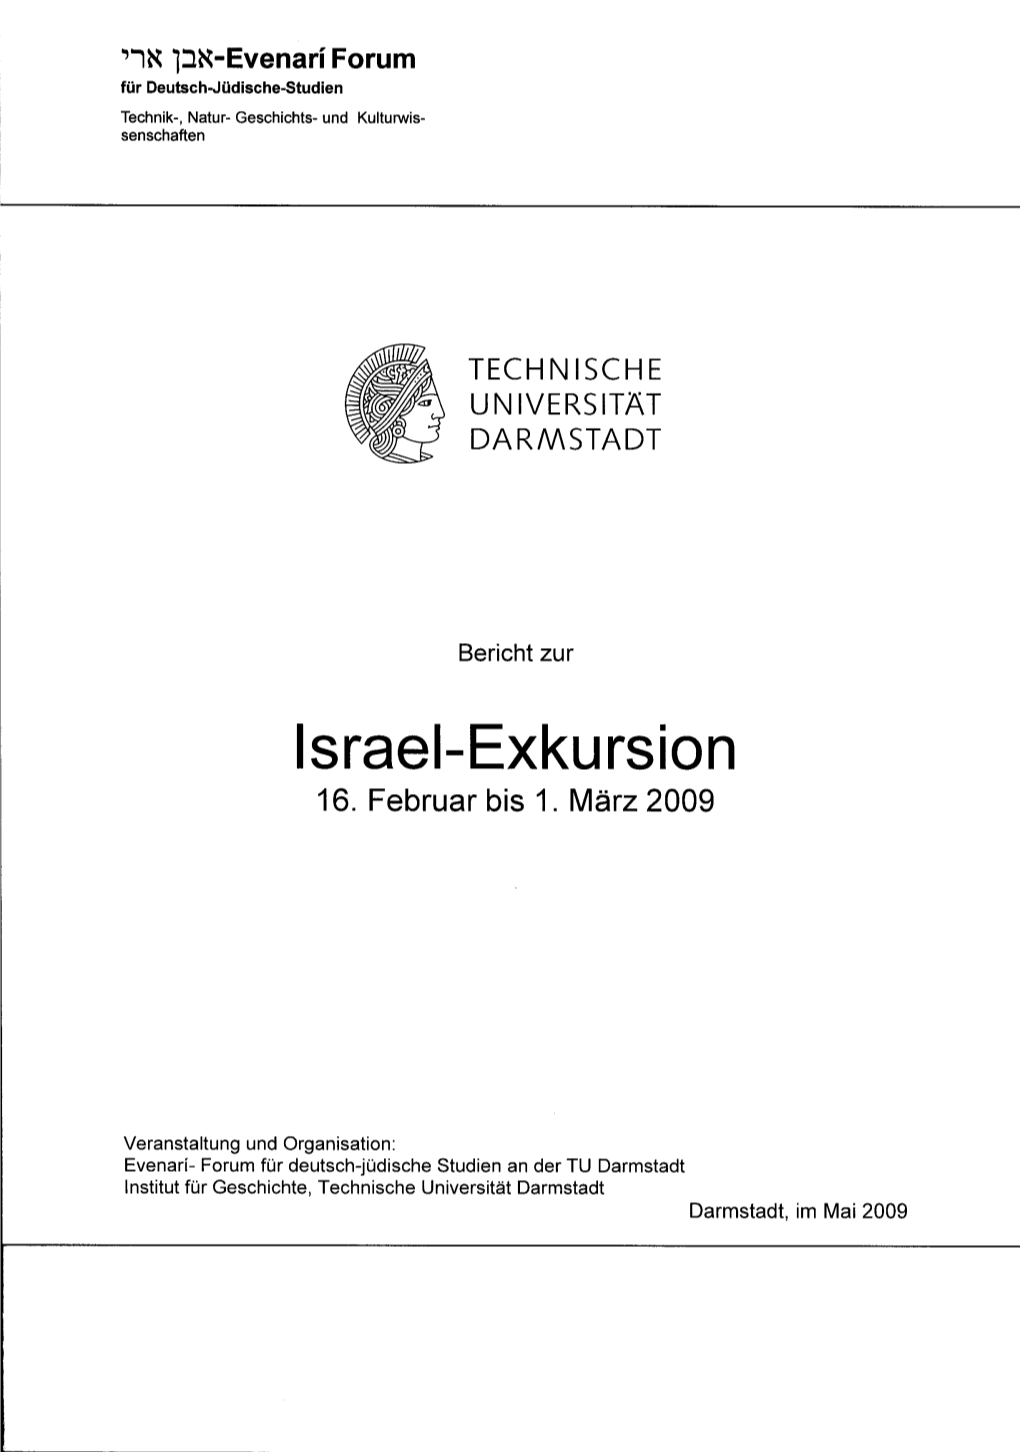 Bericht Zur Israel-Exkursion 2009